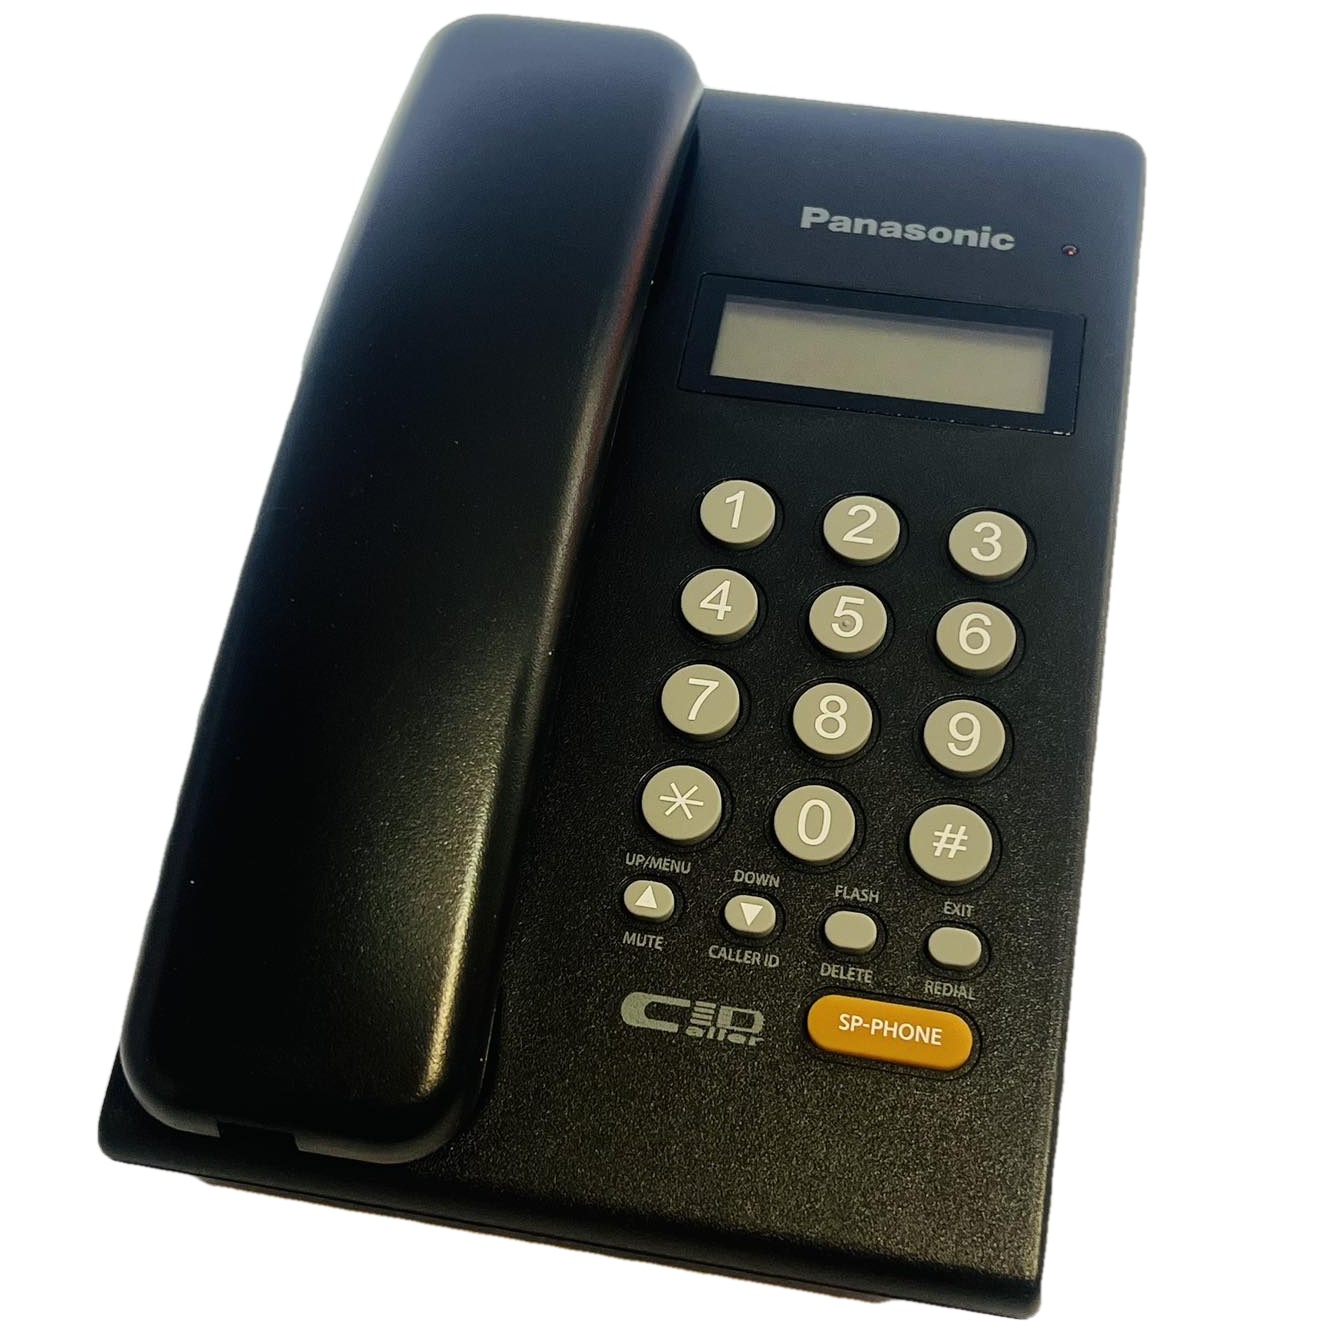 تلفن پاناسونیک مدل KX-TS402SX